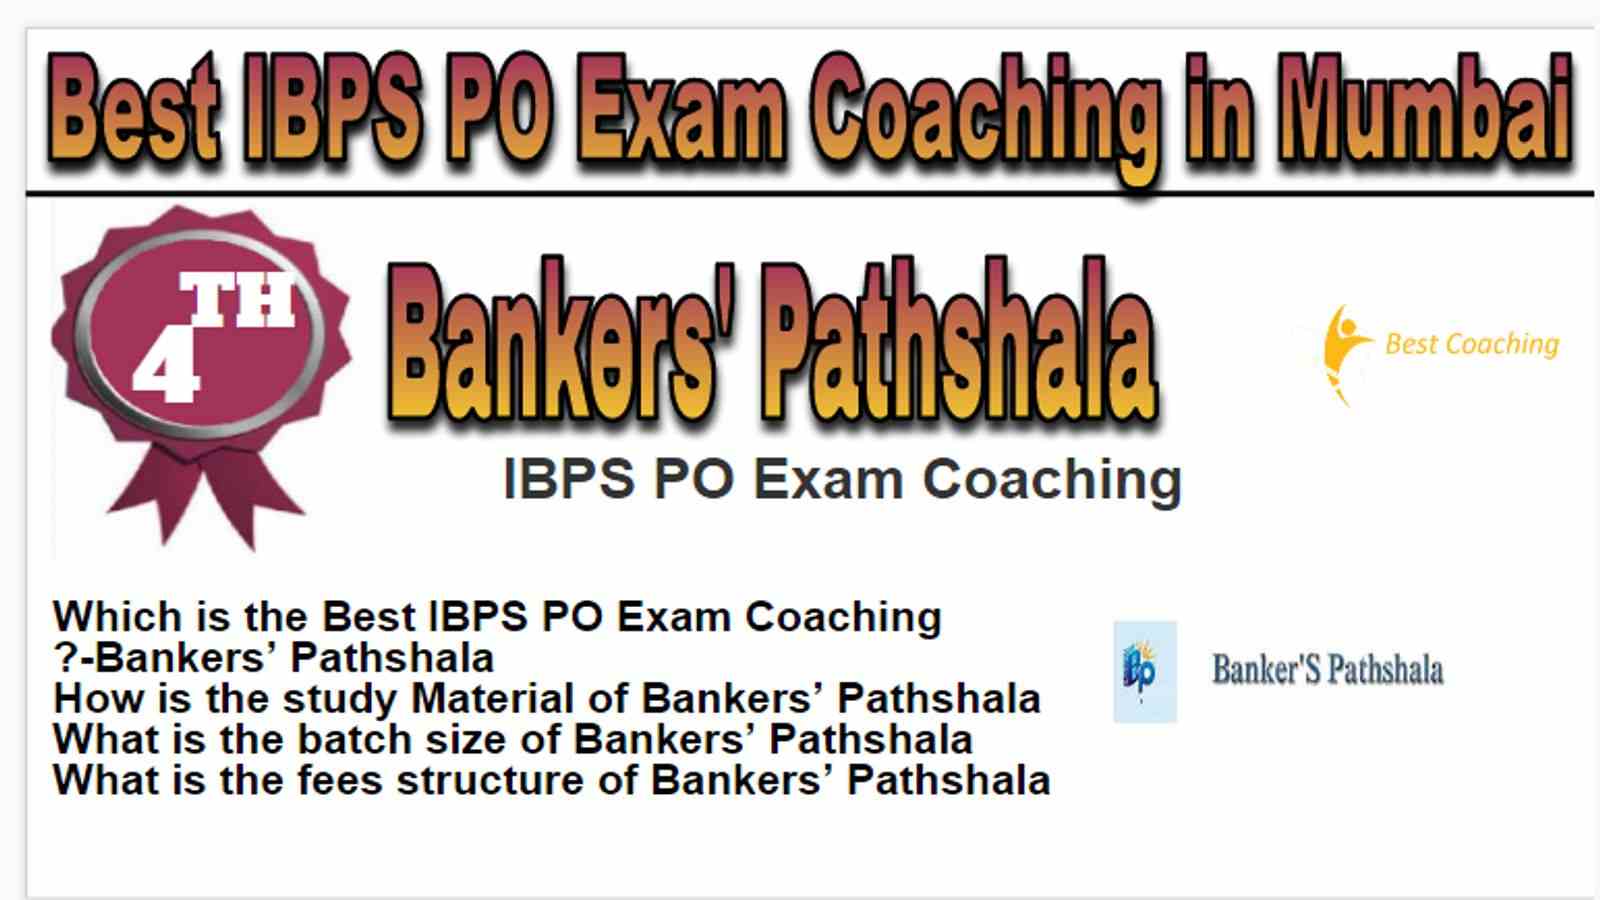 Rank 4 Best IBPS PO Exam Coaching in Mumbai